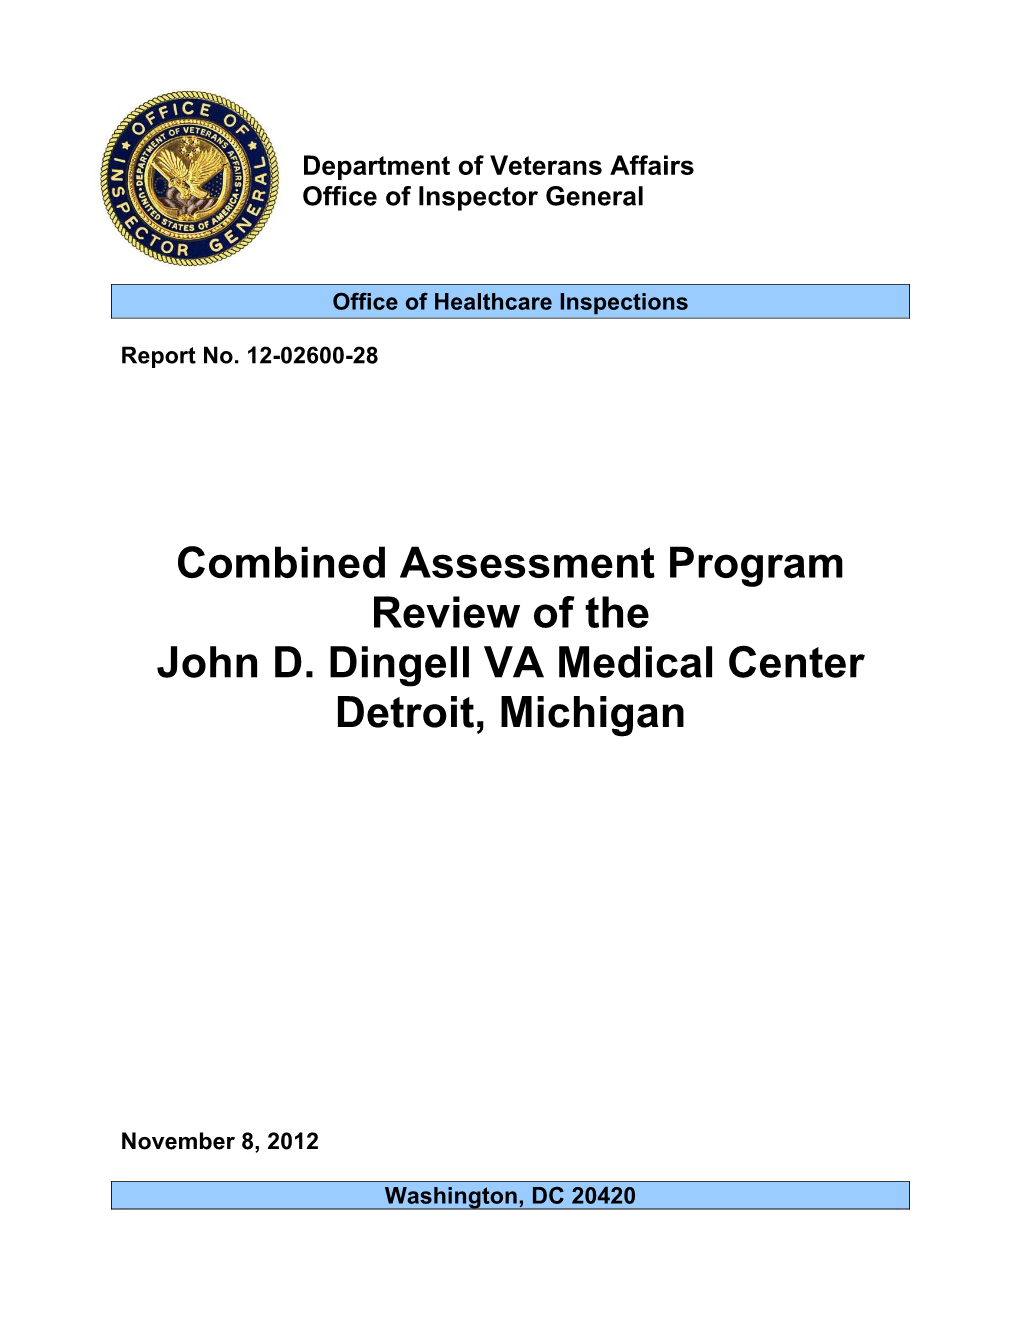 D. Dingell VA Medical Center, Detroit, Michigan, Report No